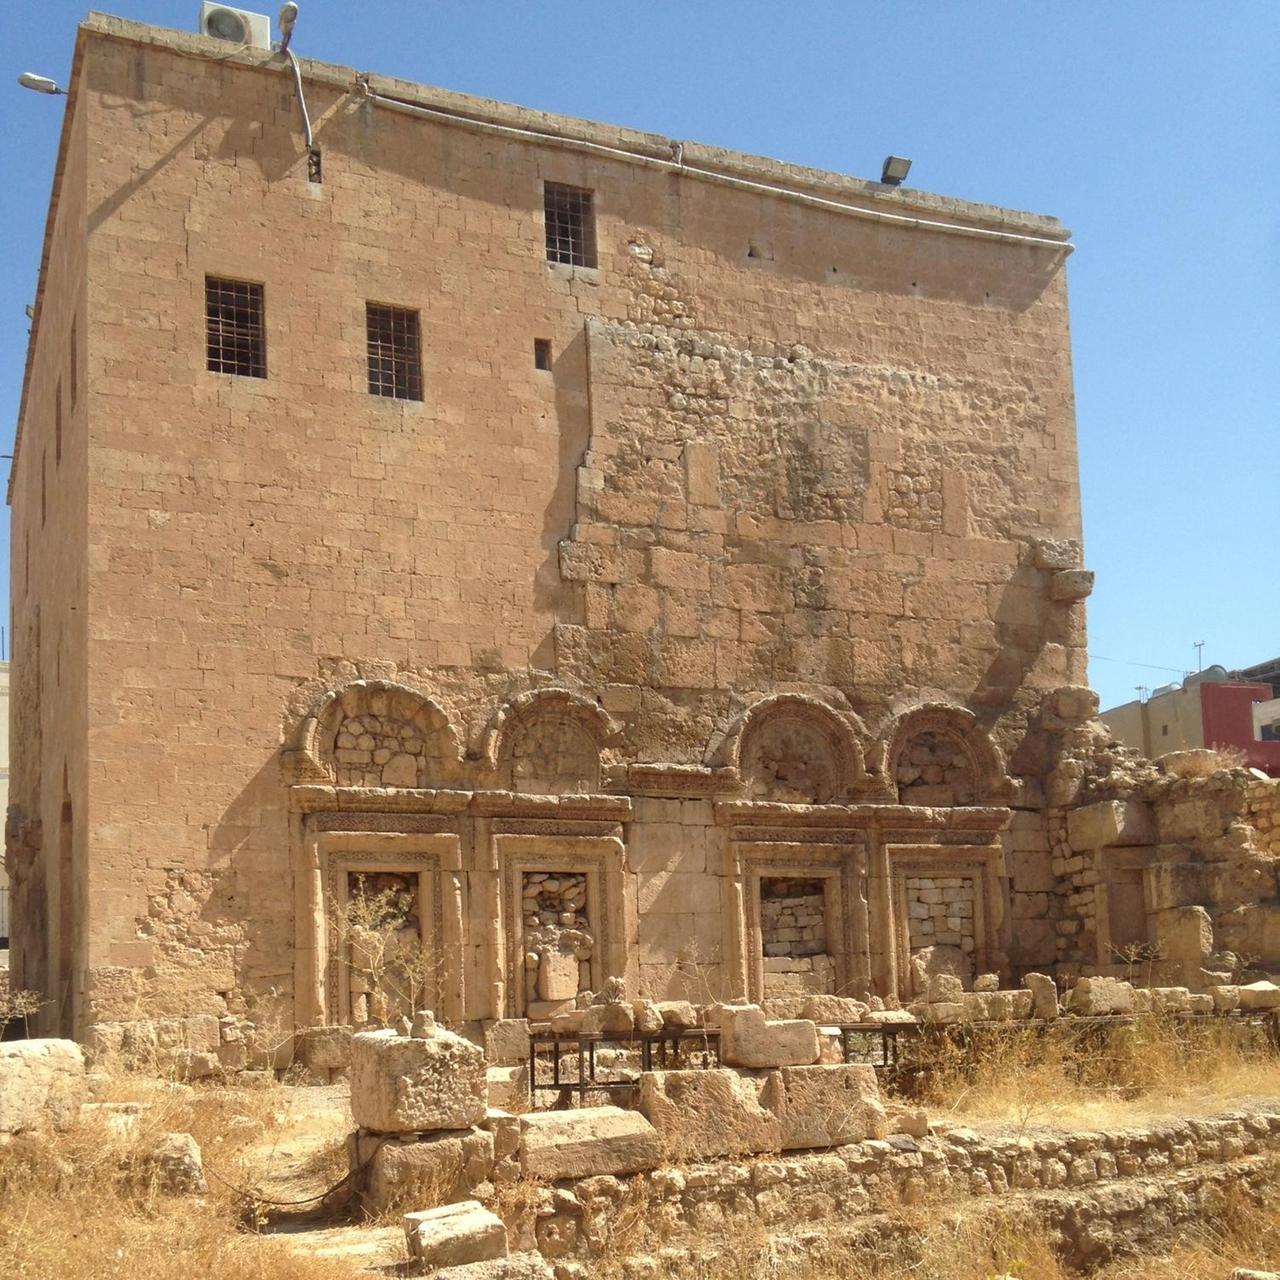 Die Jakobskirche von Nisibis - ein schlichter, rechteckiger Bau aus uraltem Mauerwerk